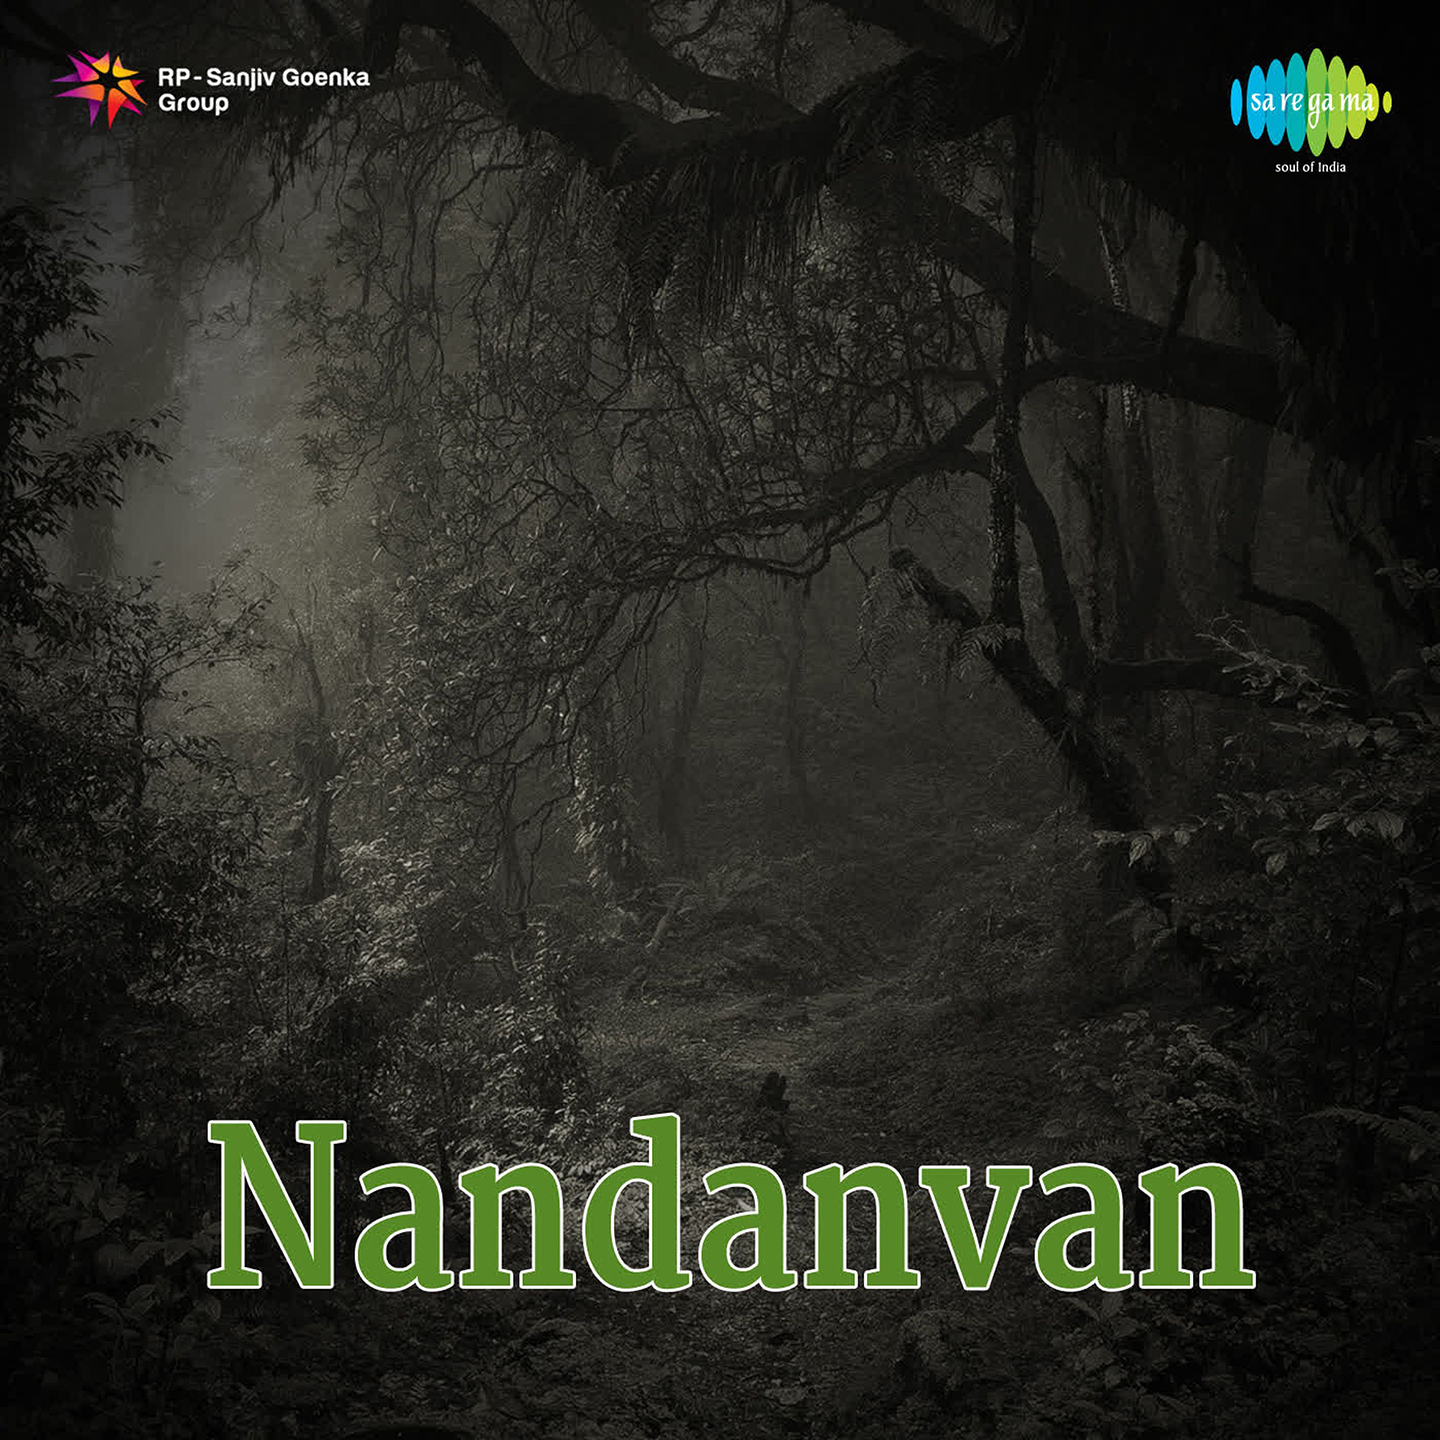 Nandanvan